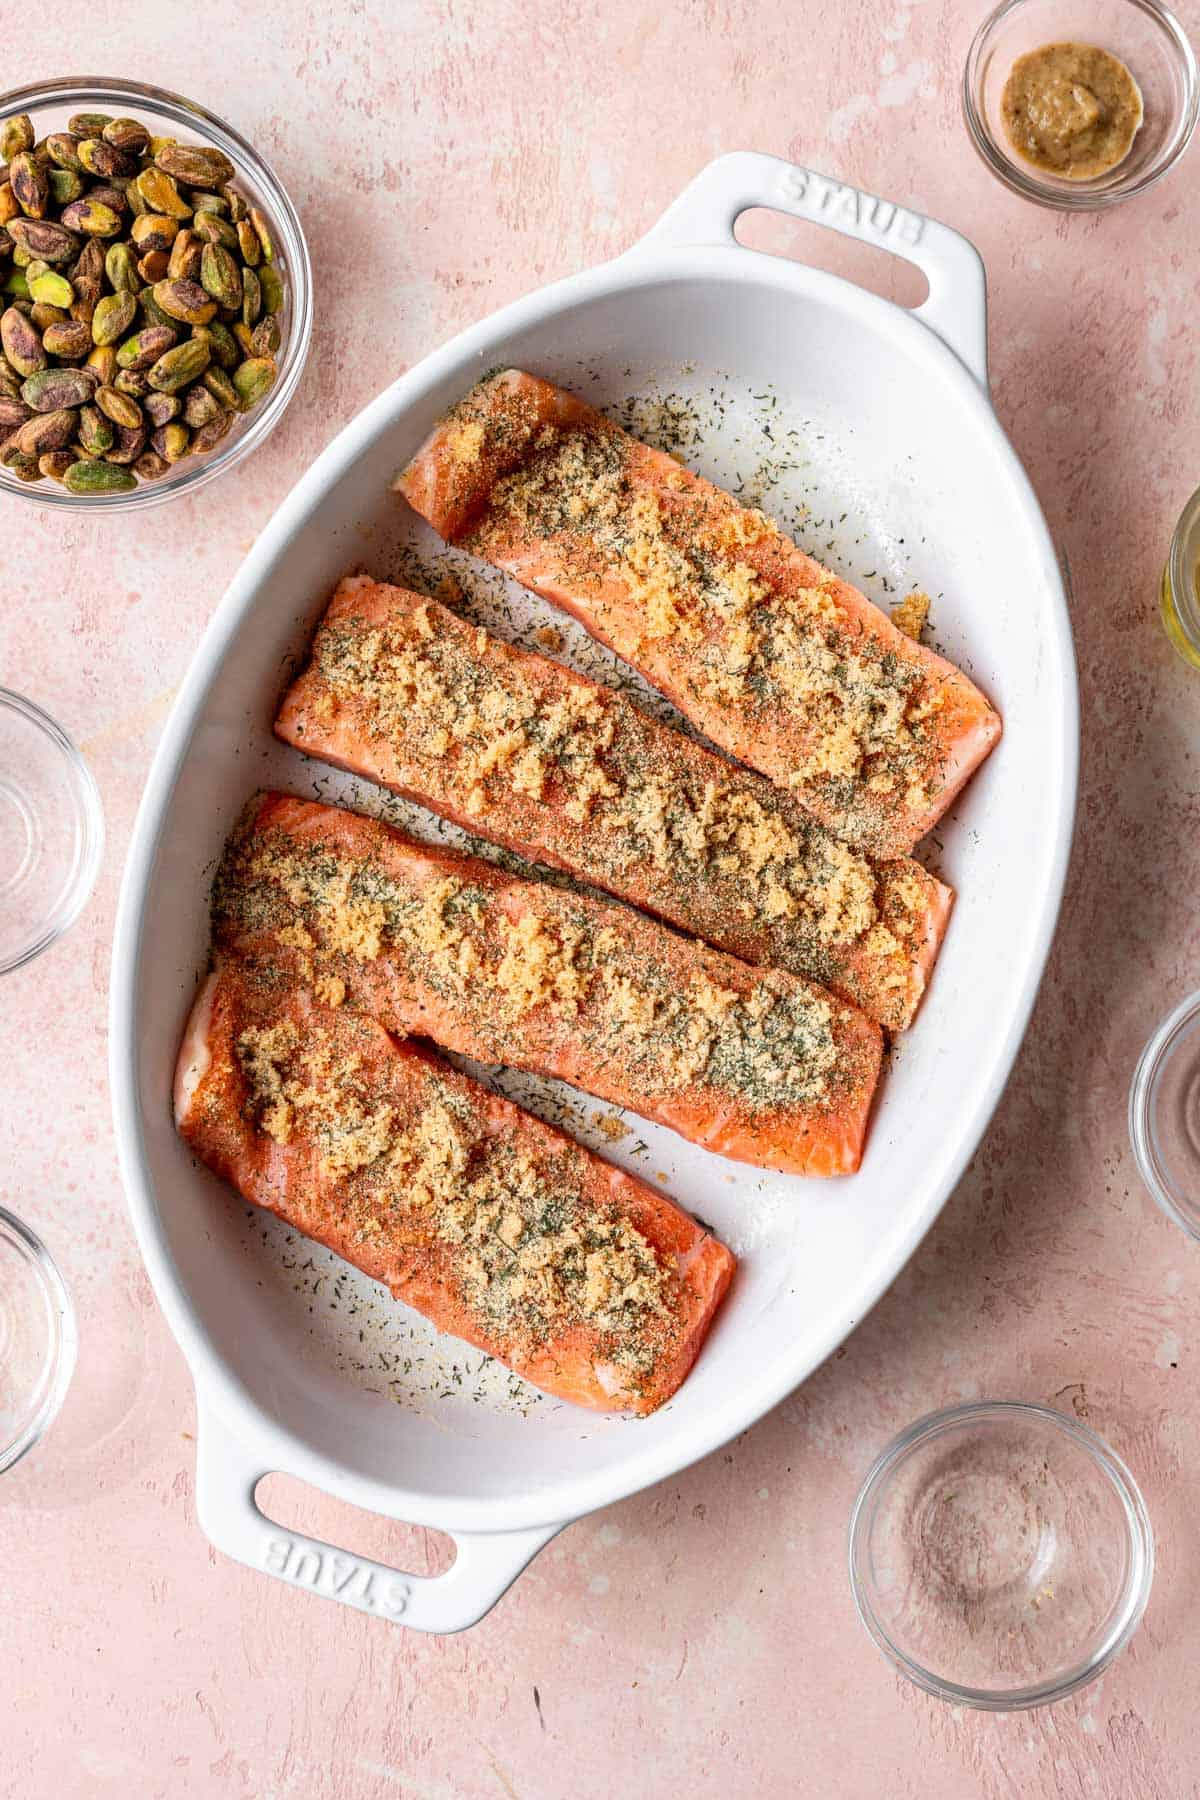 4 filets of salmon seasoned in a baking dish.